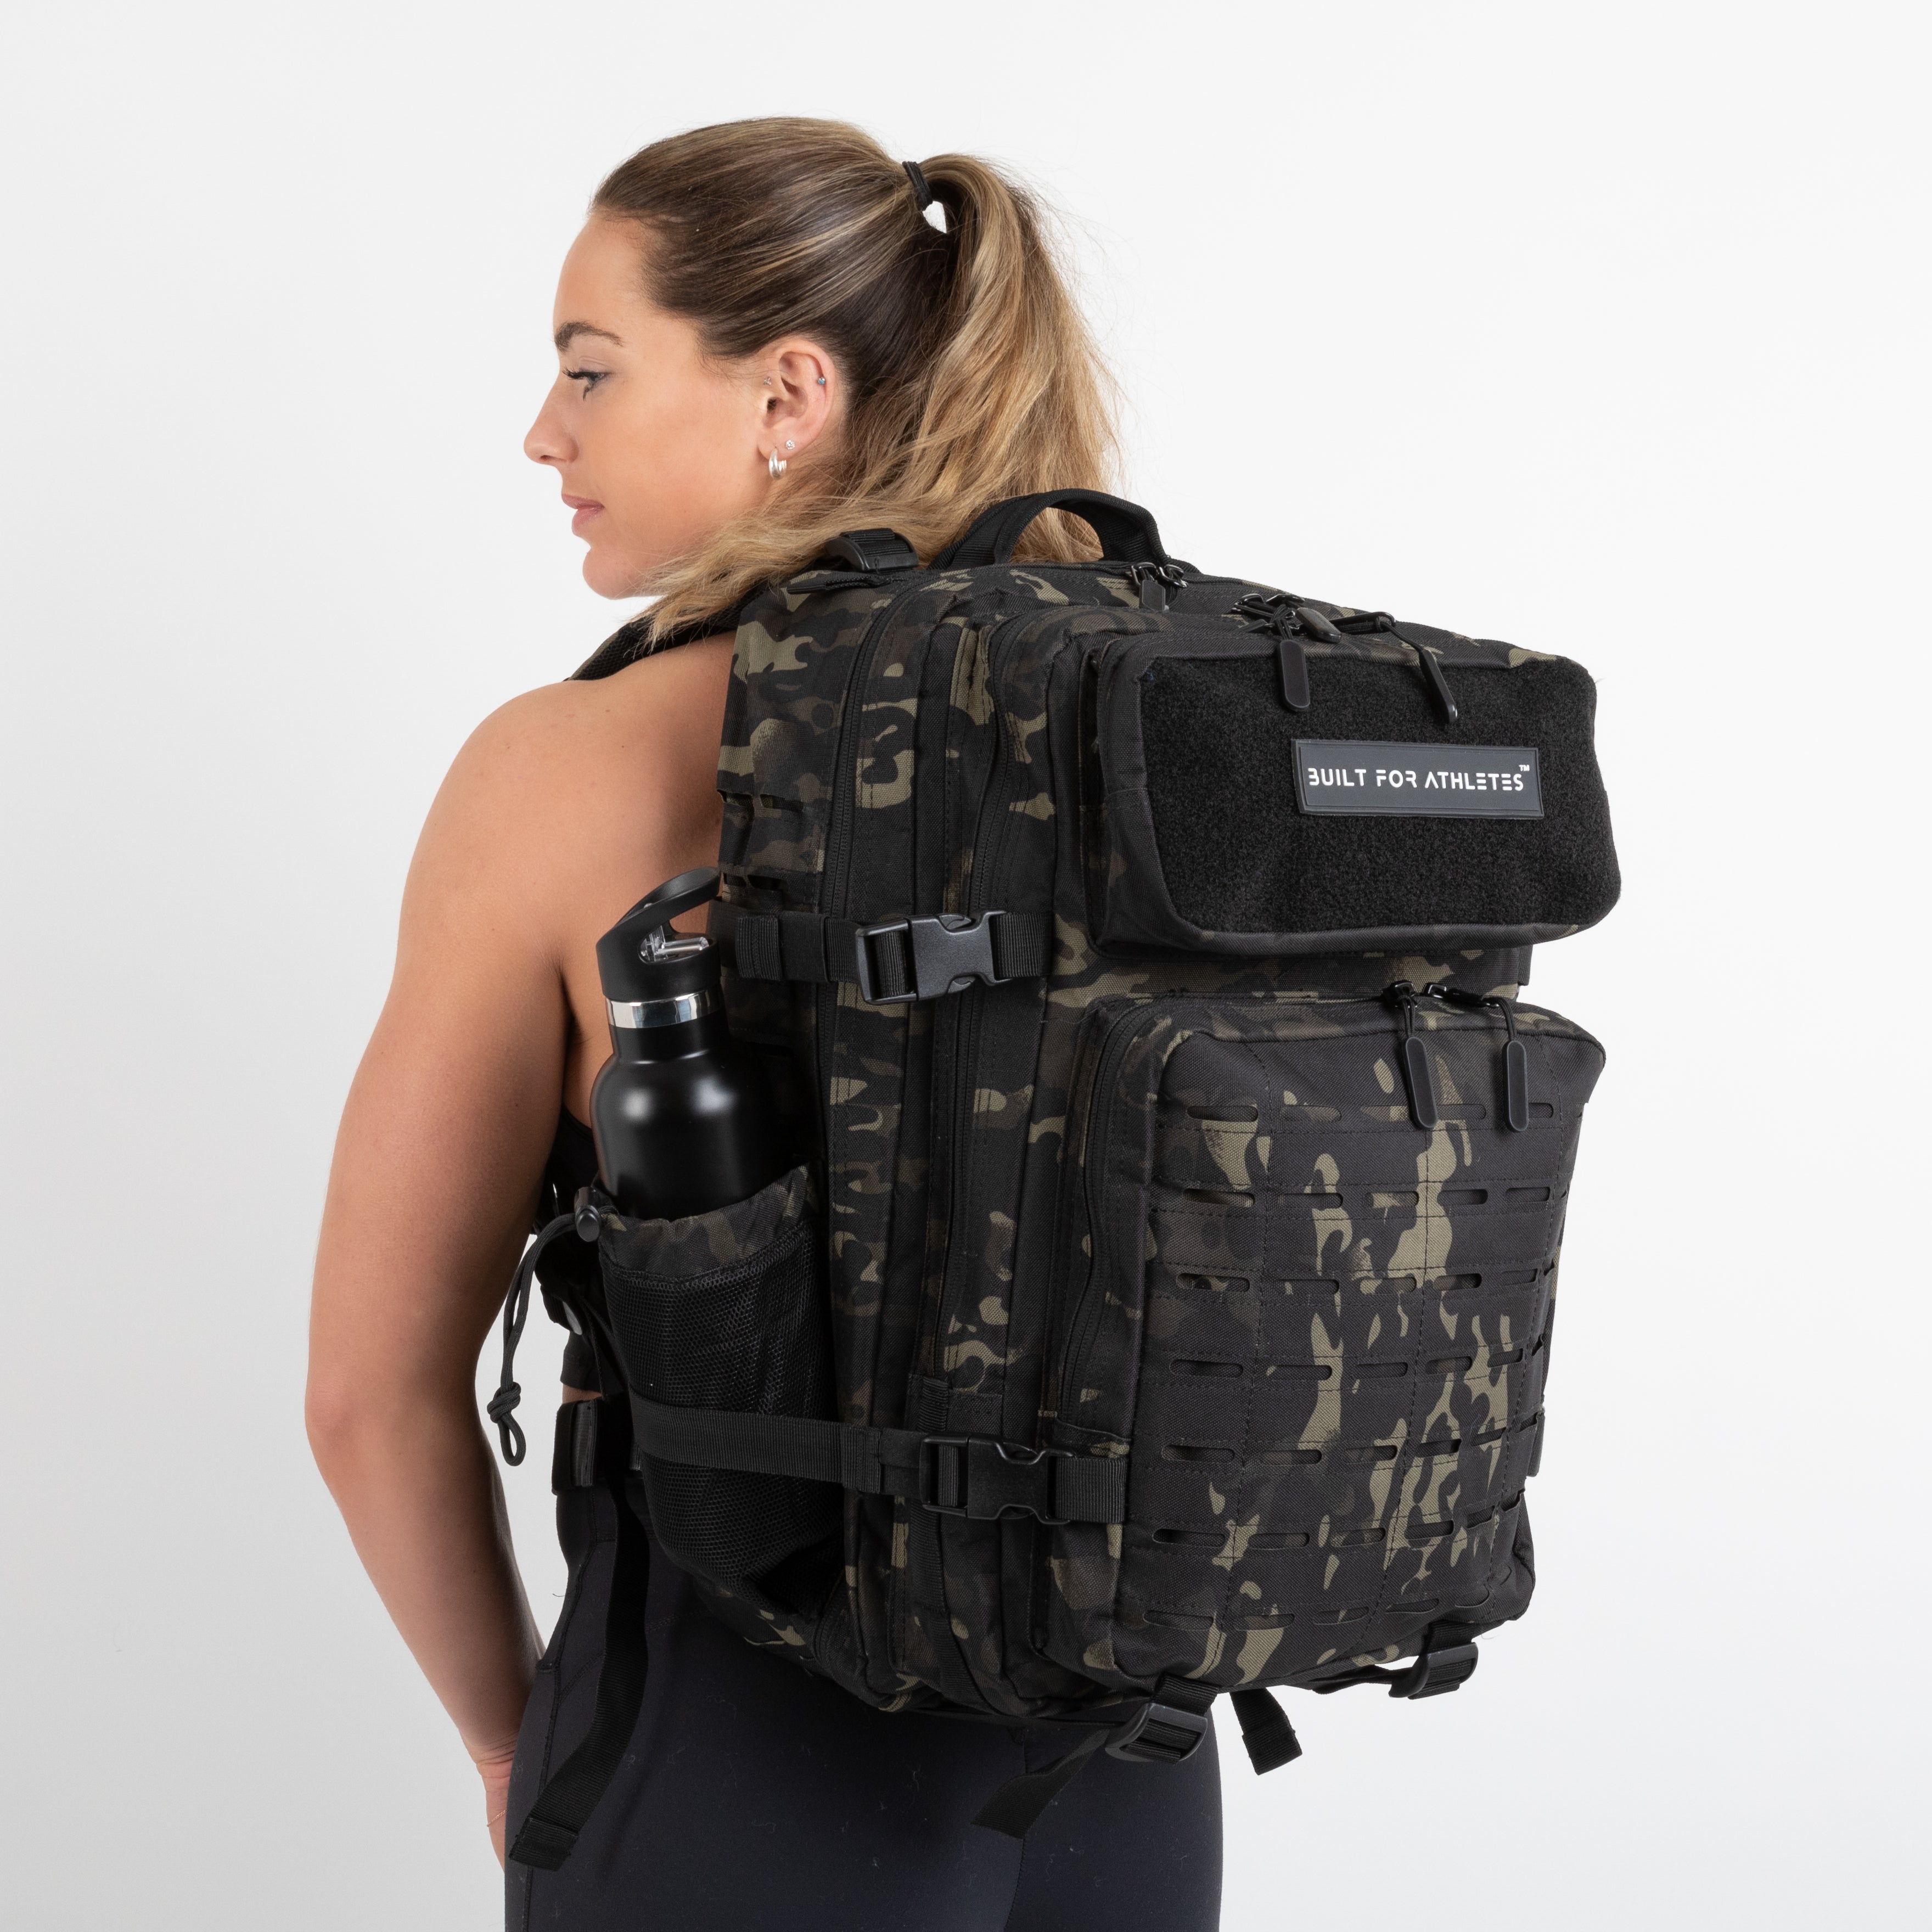 45L Large Backpack